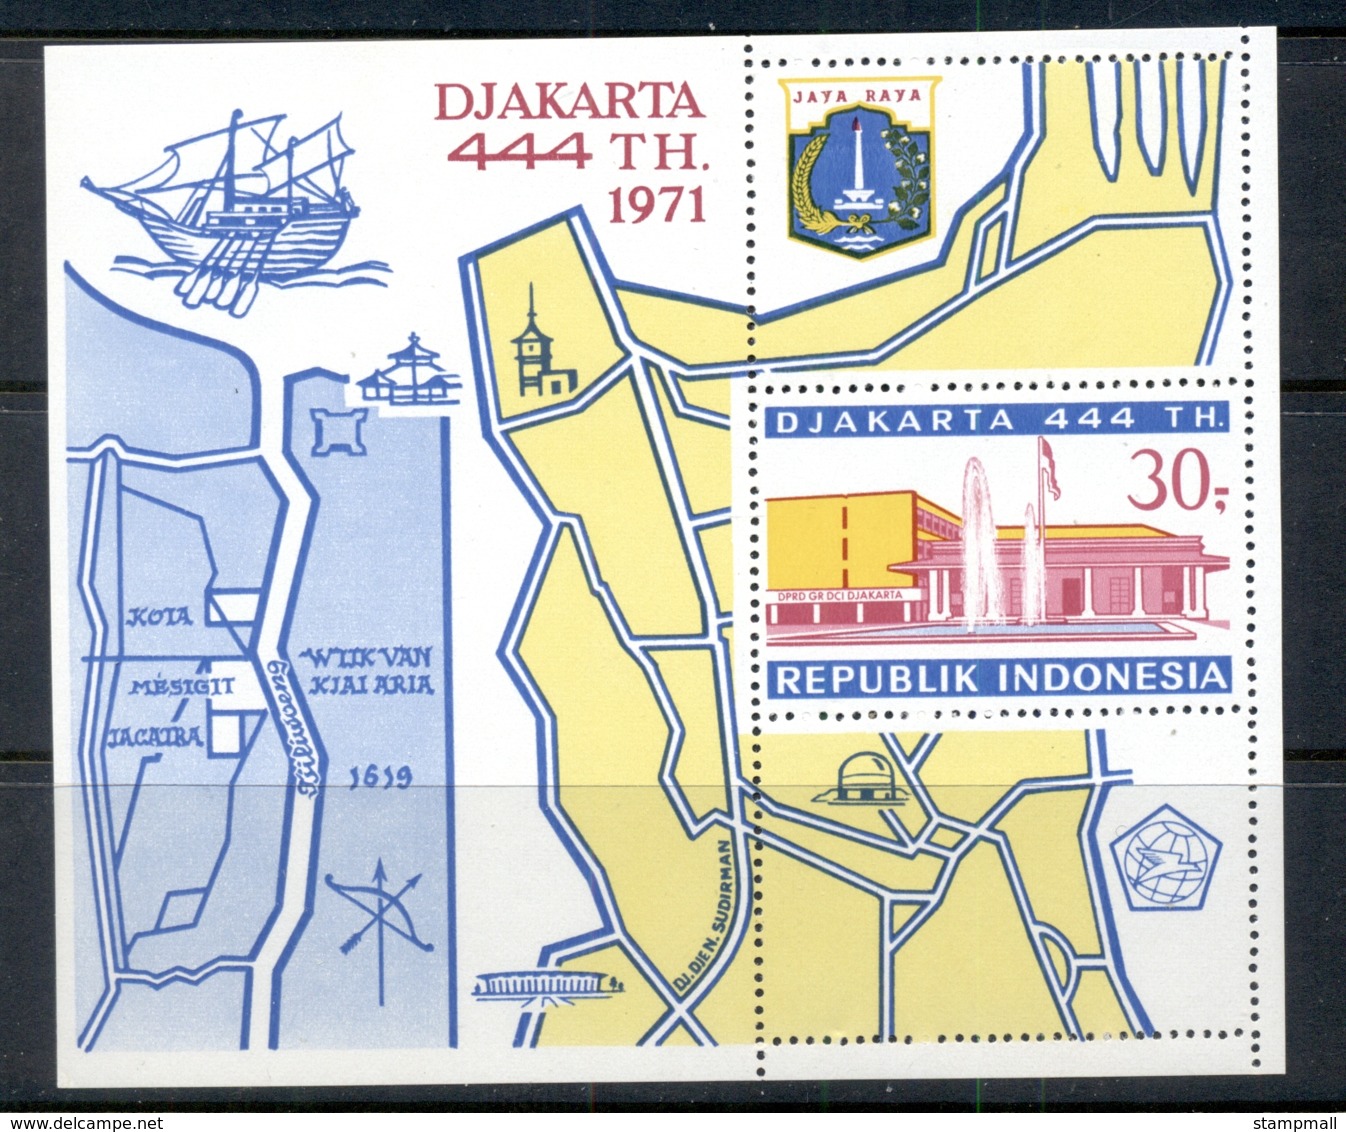 Indonesia 1971 Djakarta 444th Anniversary MS MUH - Indonesia